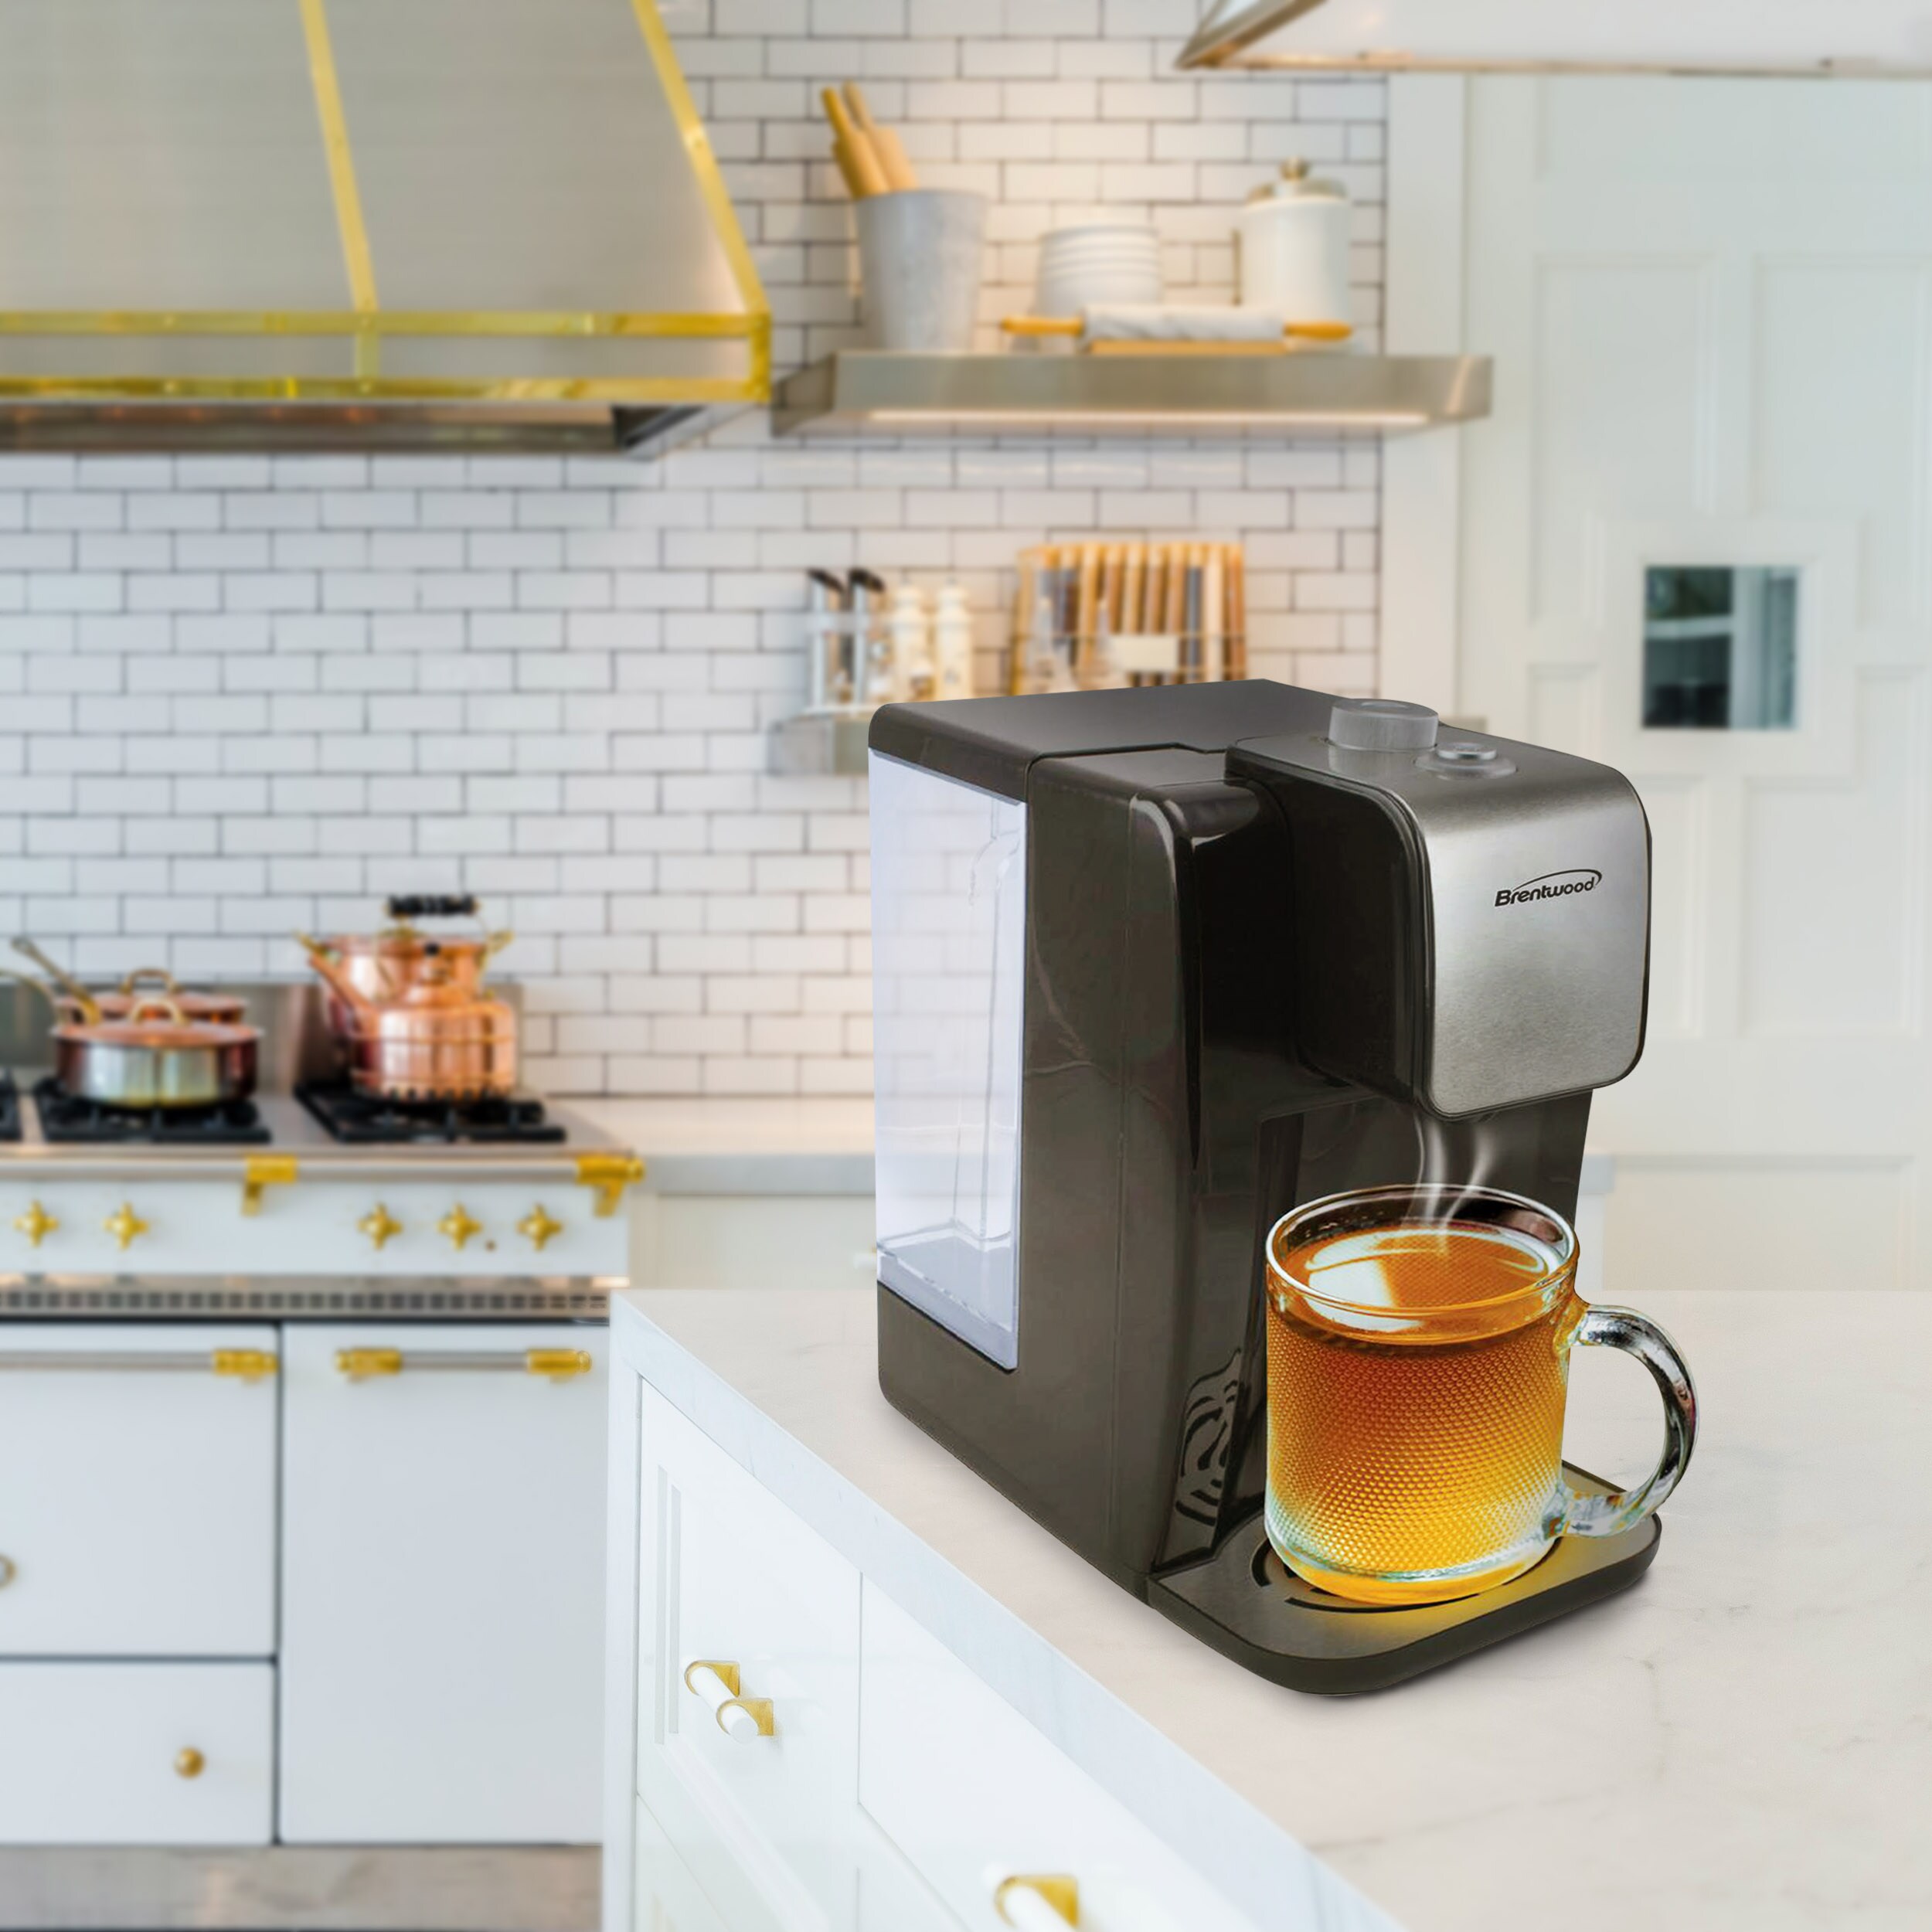 2.2l electric kettle smart constant kitchen